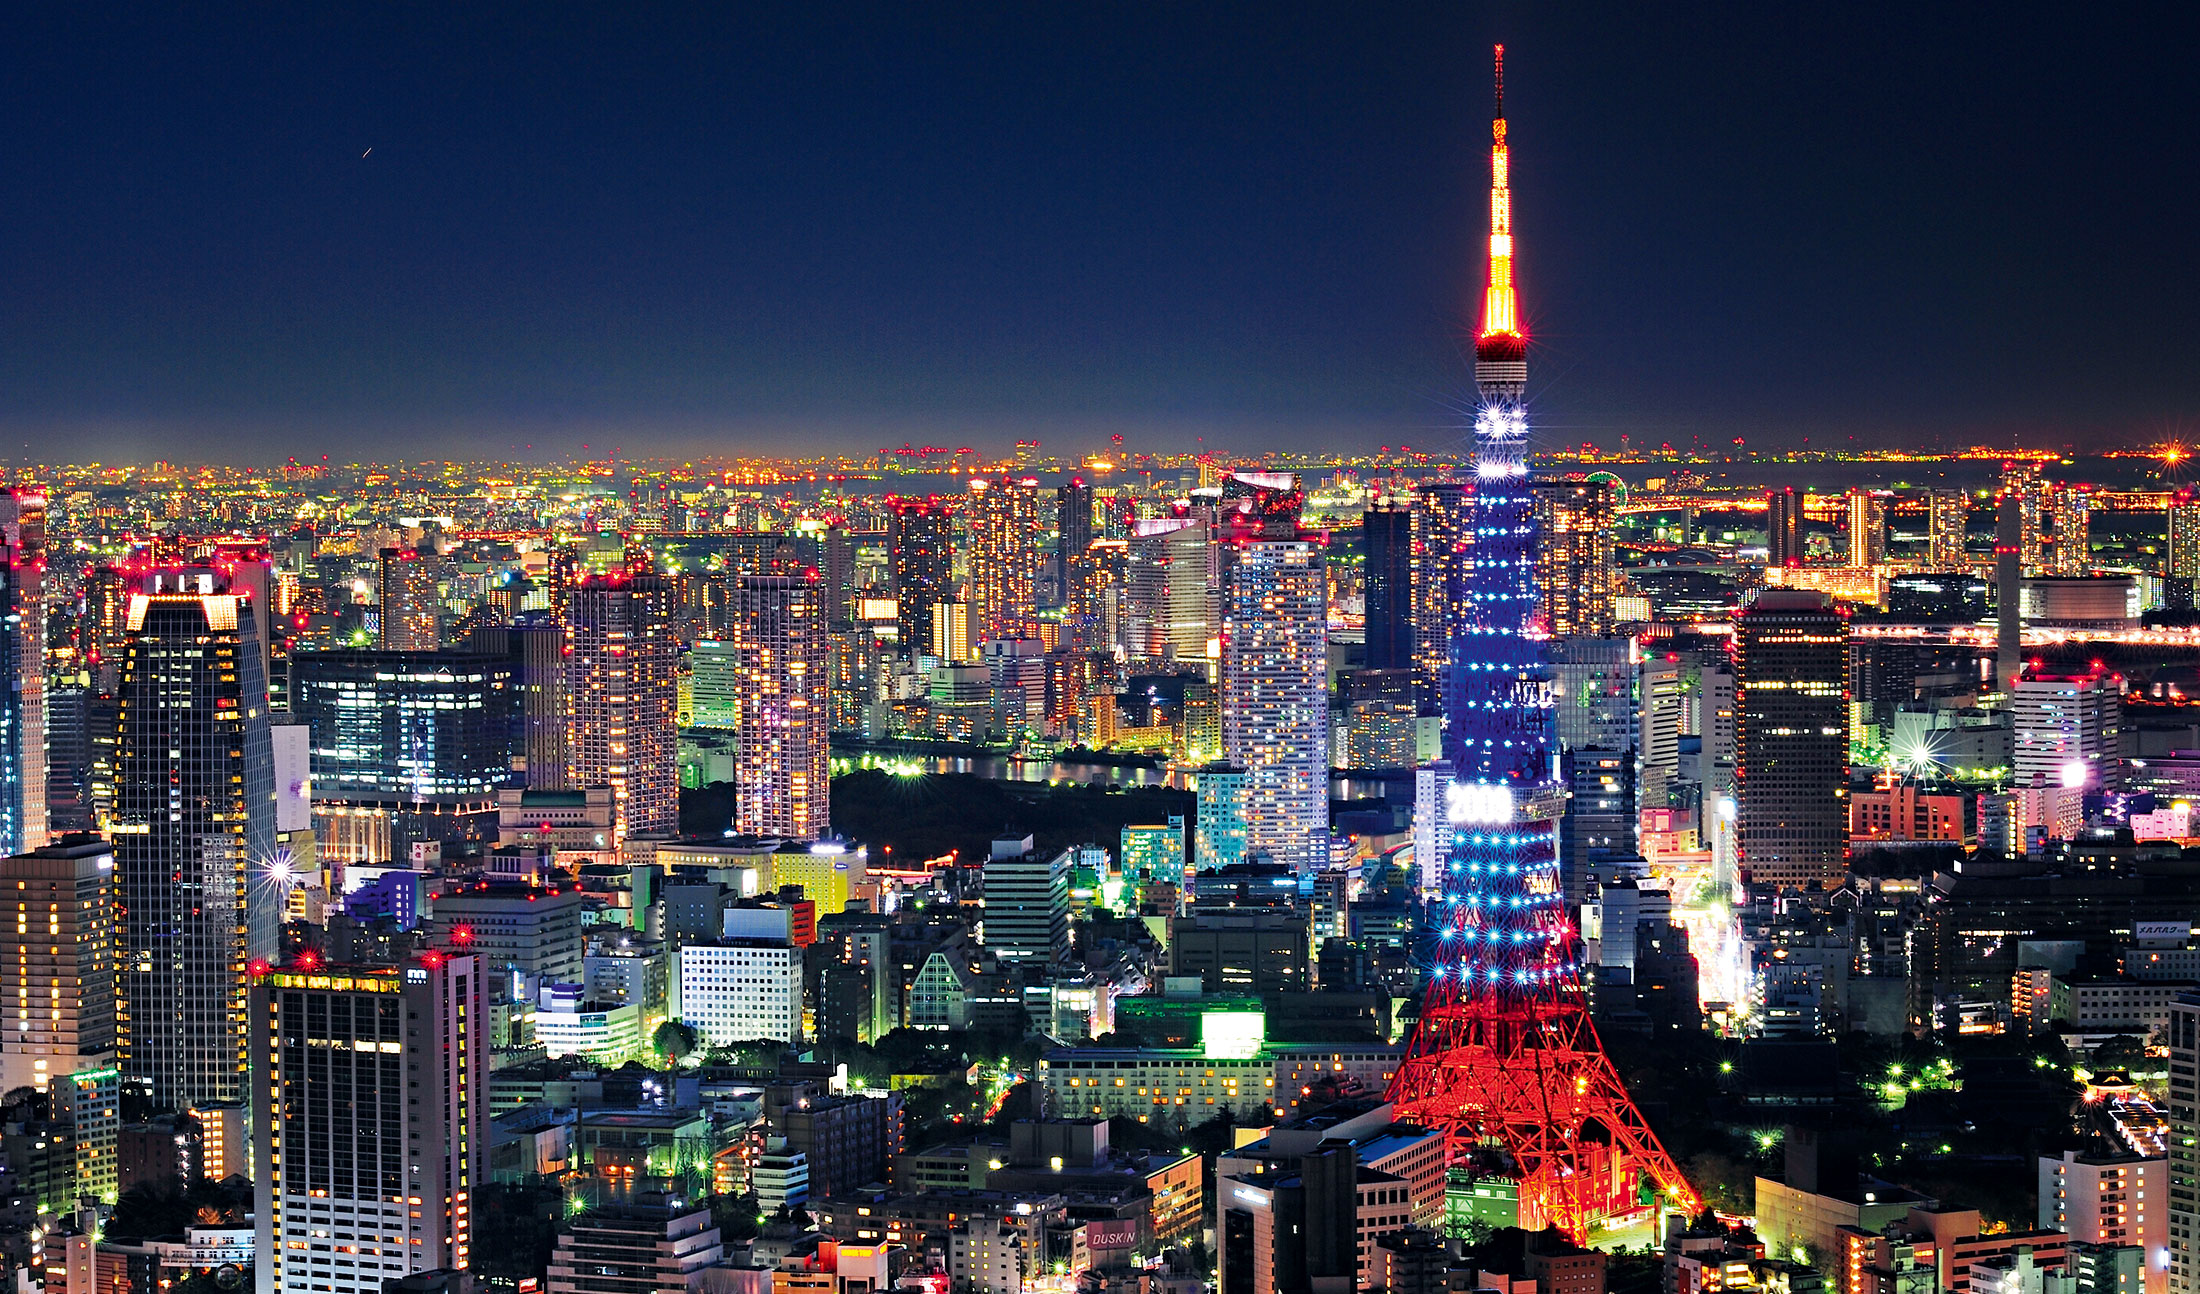 Thủ đô Tokyo của Nhật Bản đã mất vị trí trong top 10 các thành phố đắt đỏ trên thế giới